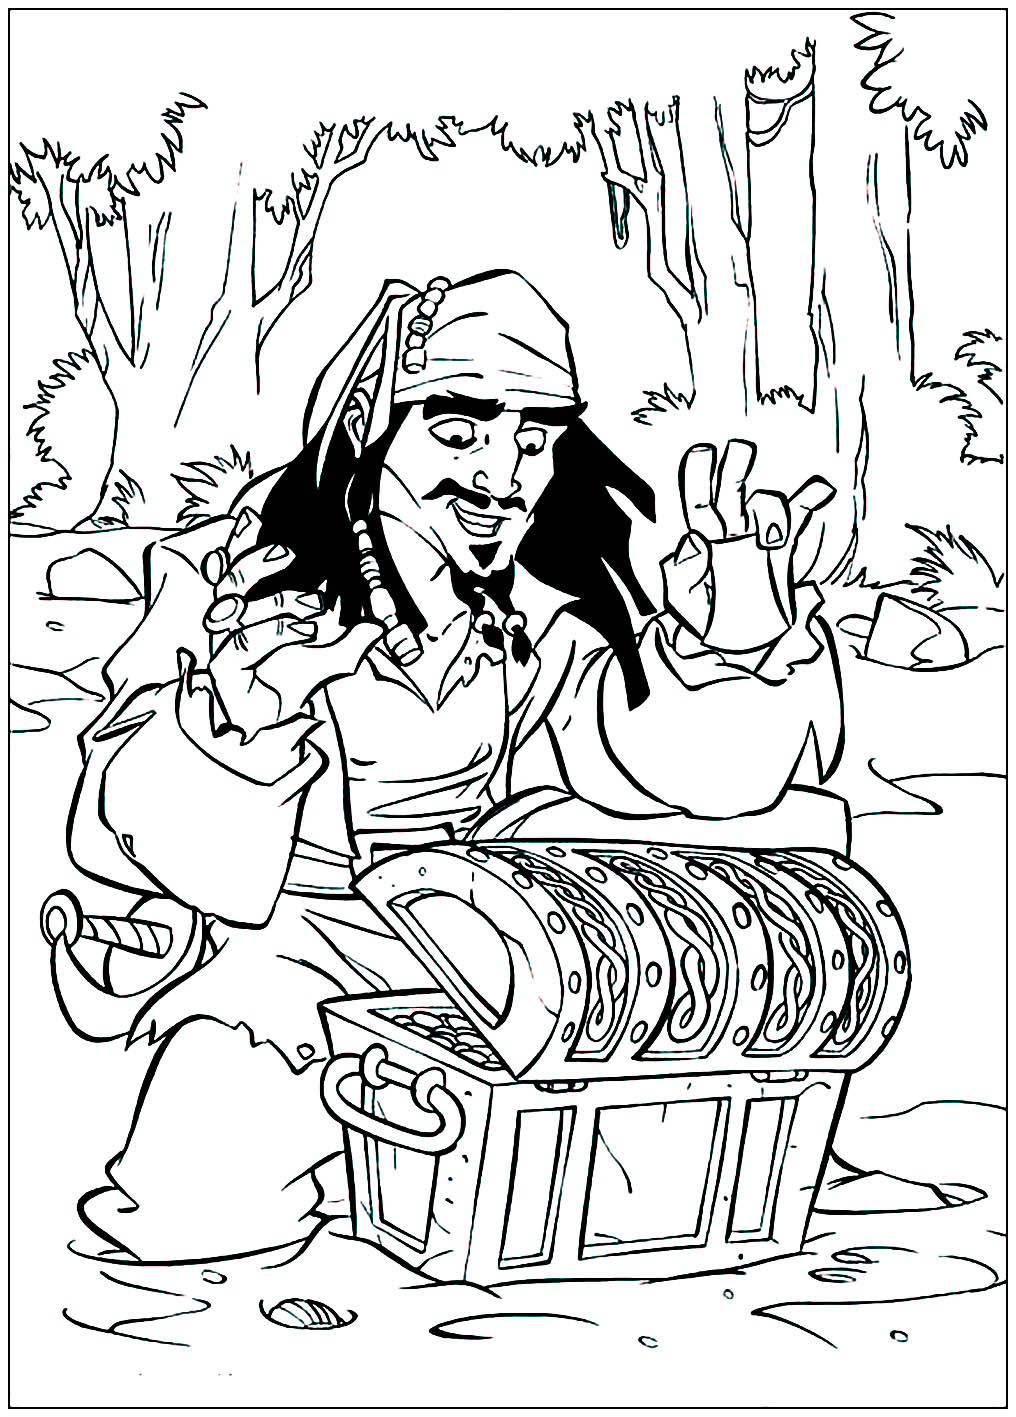 Coloriez ce dessin à temps pour récupérer le trésor avant Jack Sparrow !